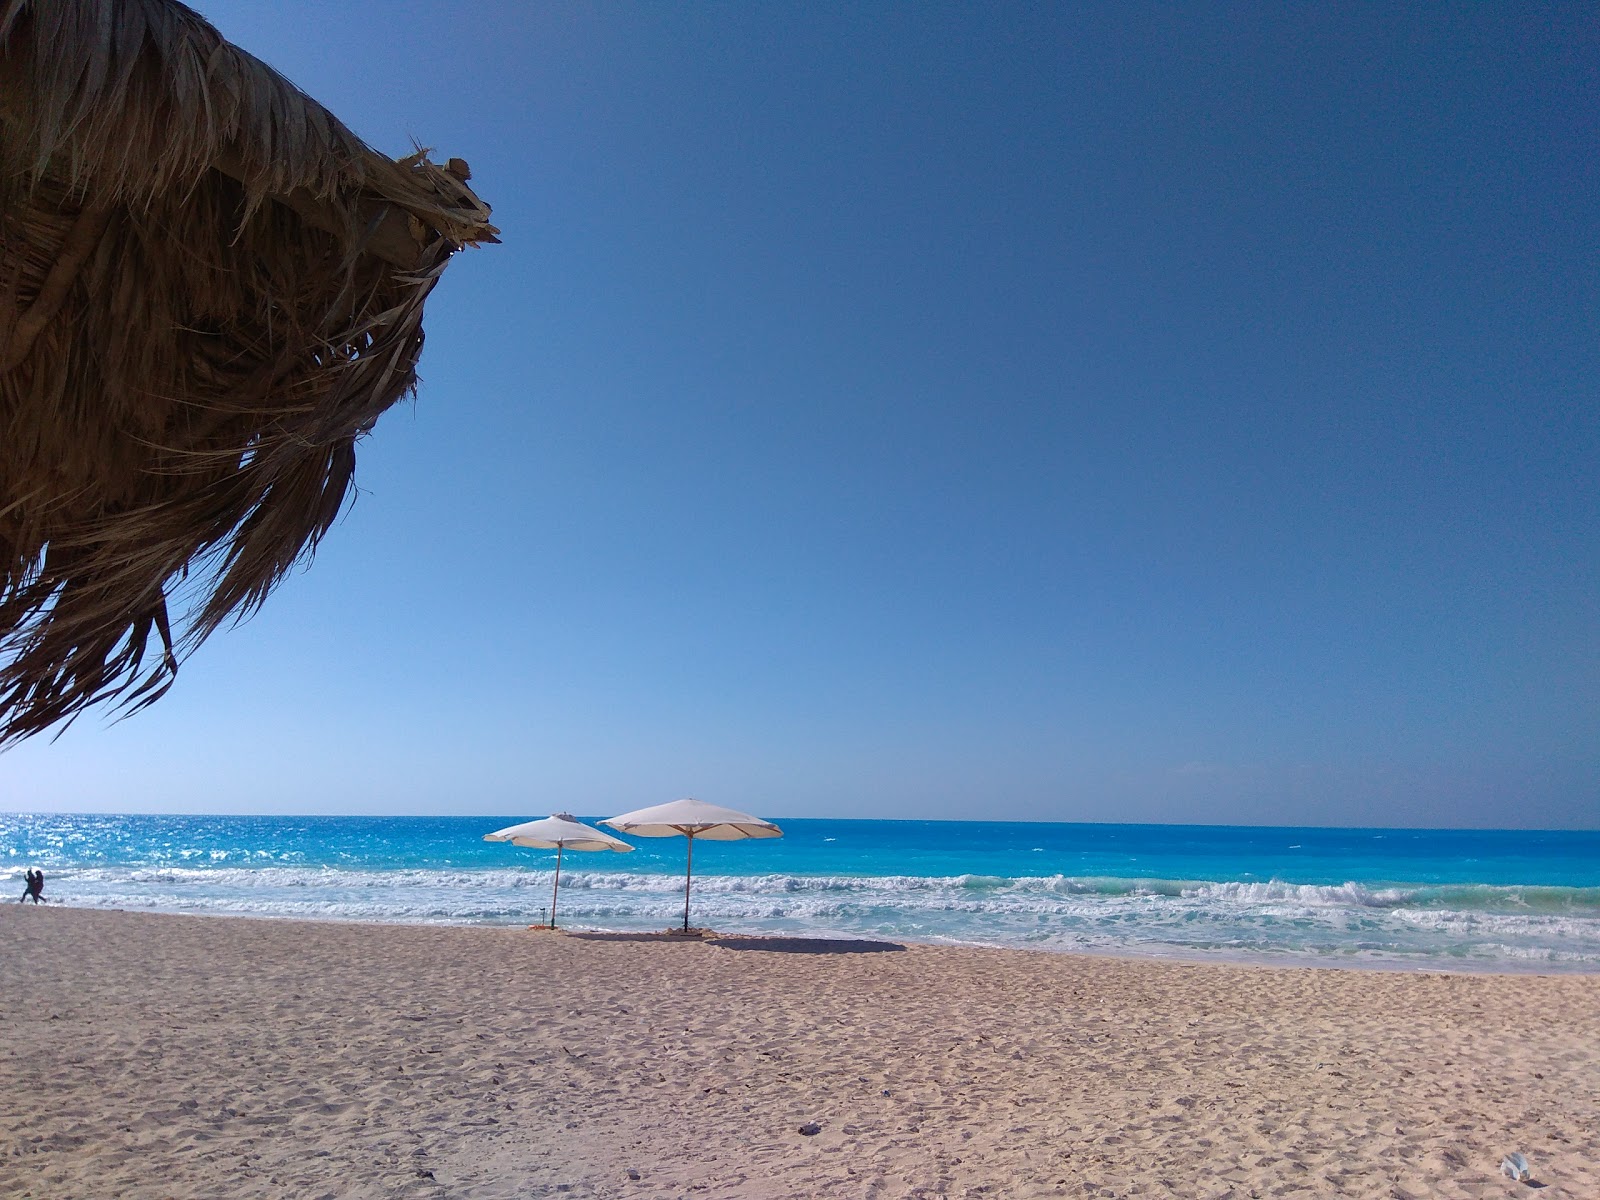 Fotografie cu Horus Beach - locul popular printre cunoscătorii de relaxare